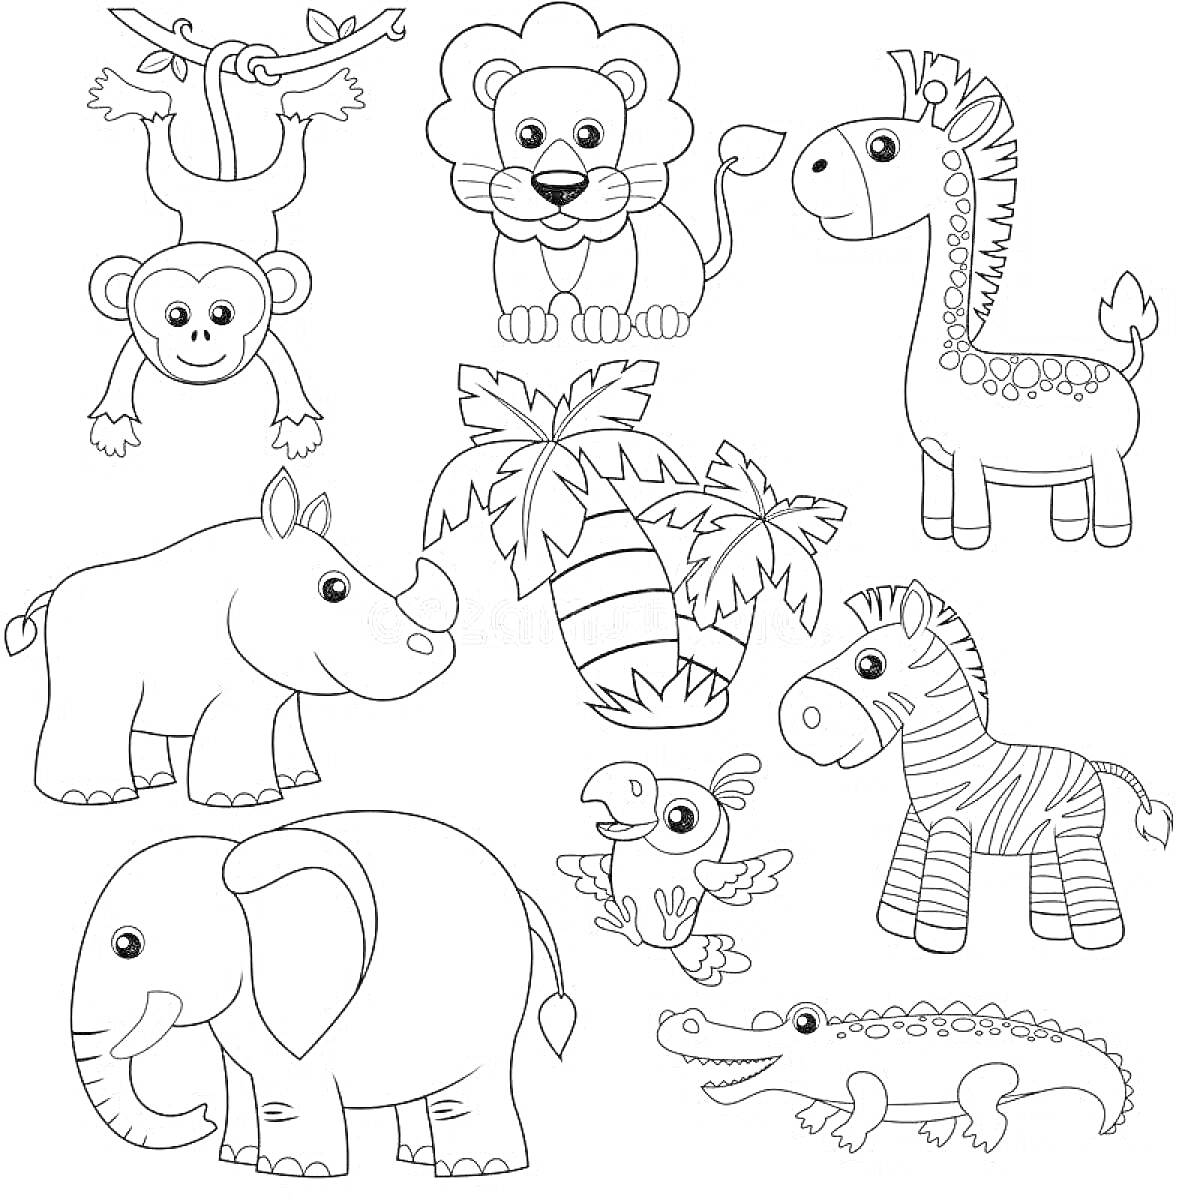 Раскраска Детская раскраска с африканскими животными – обезьяна, лев, жираф, носорог, зебра, слон, попугай, крокодил и пальмы